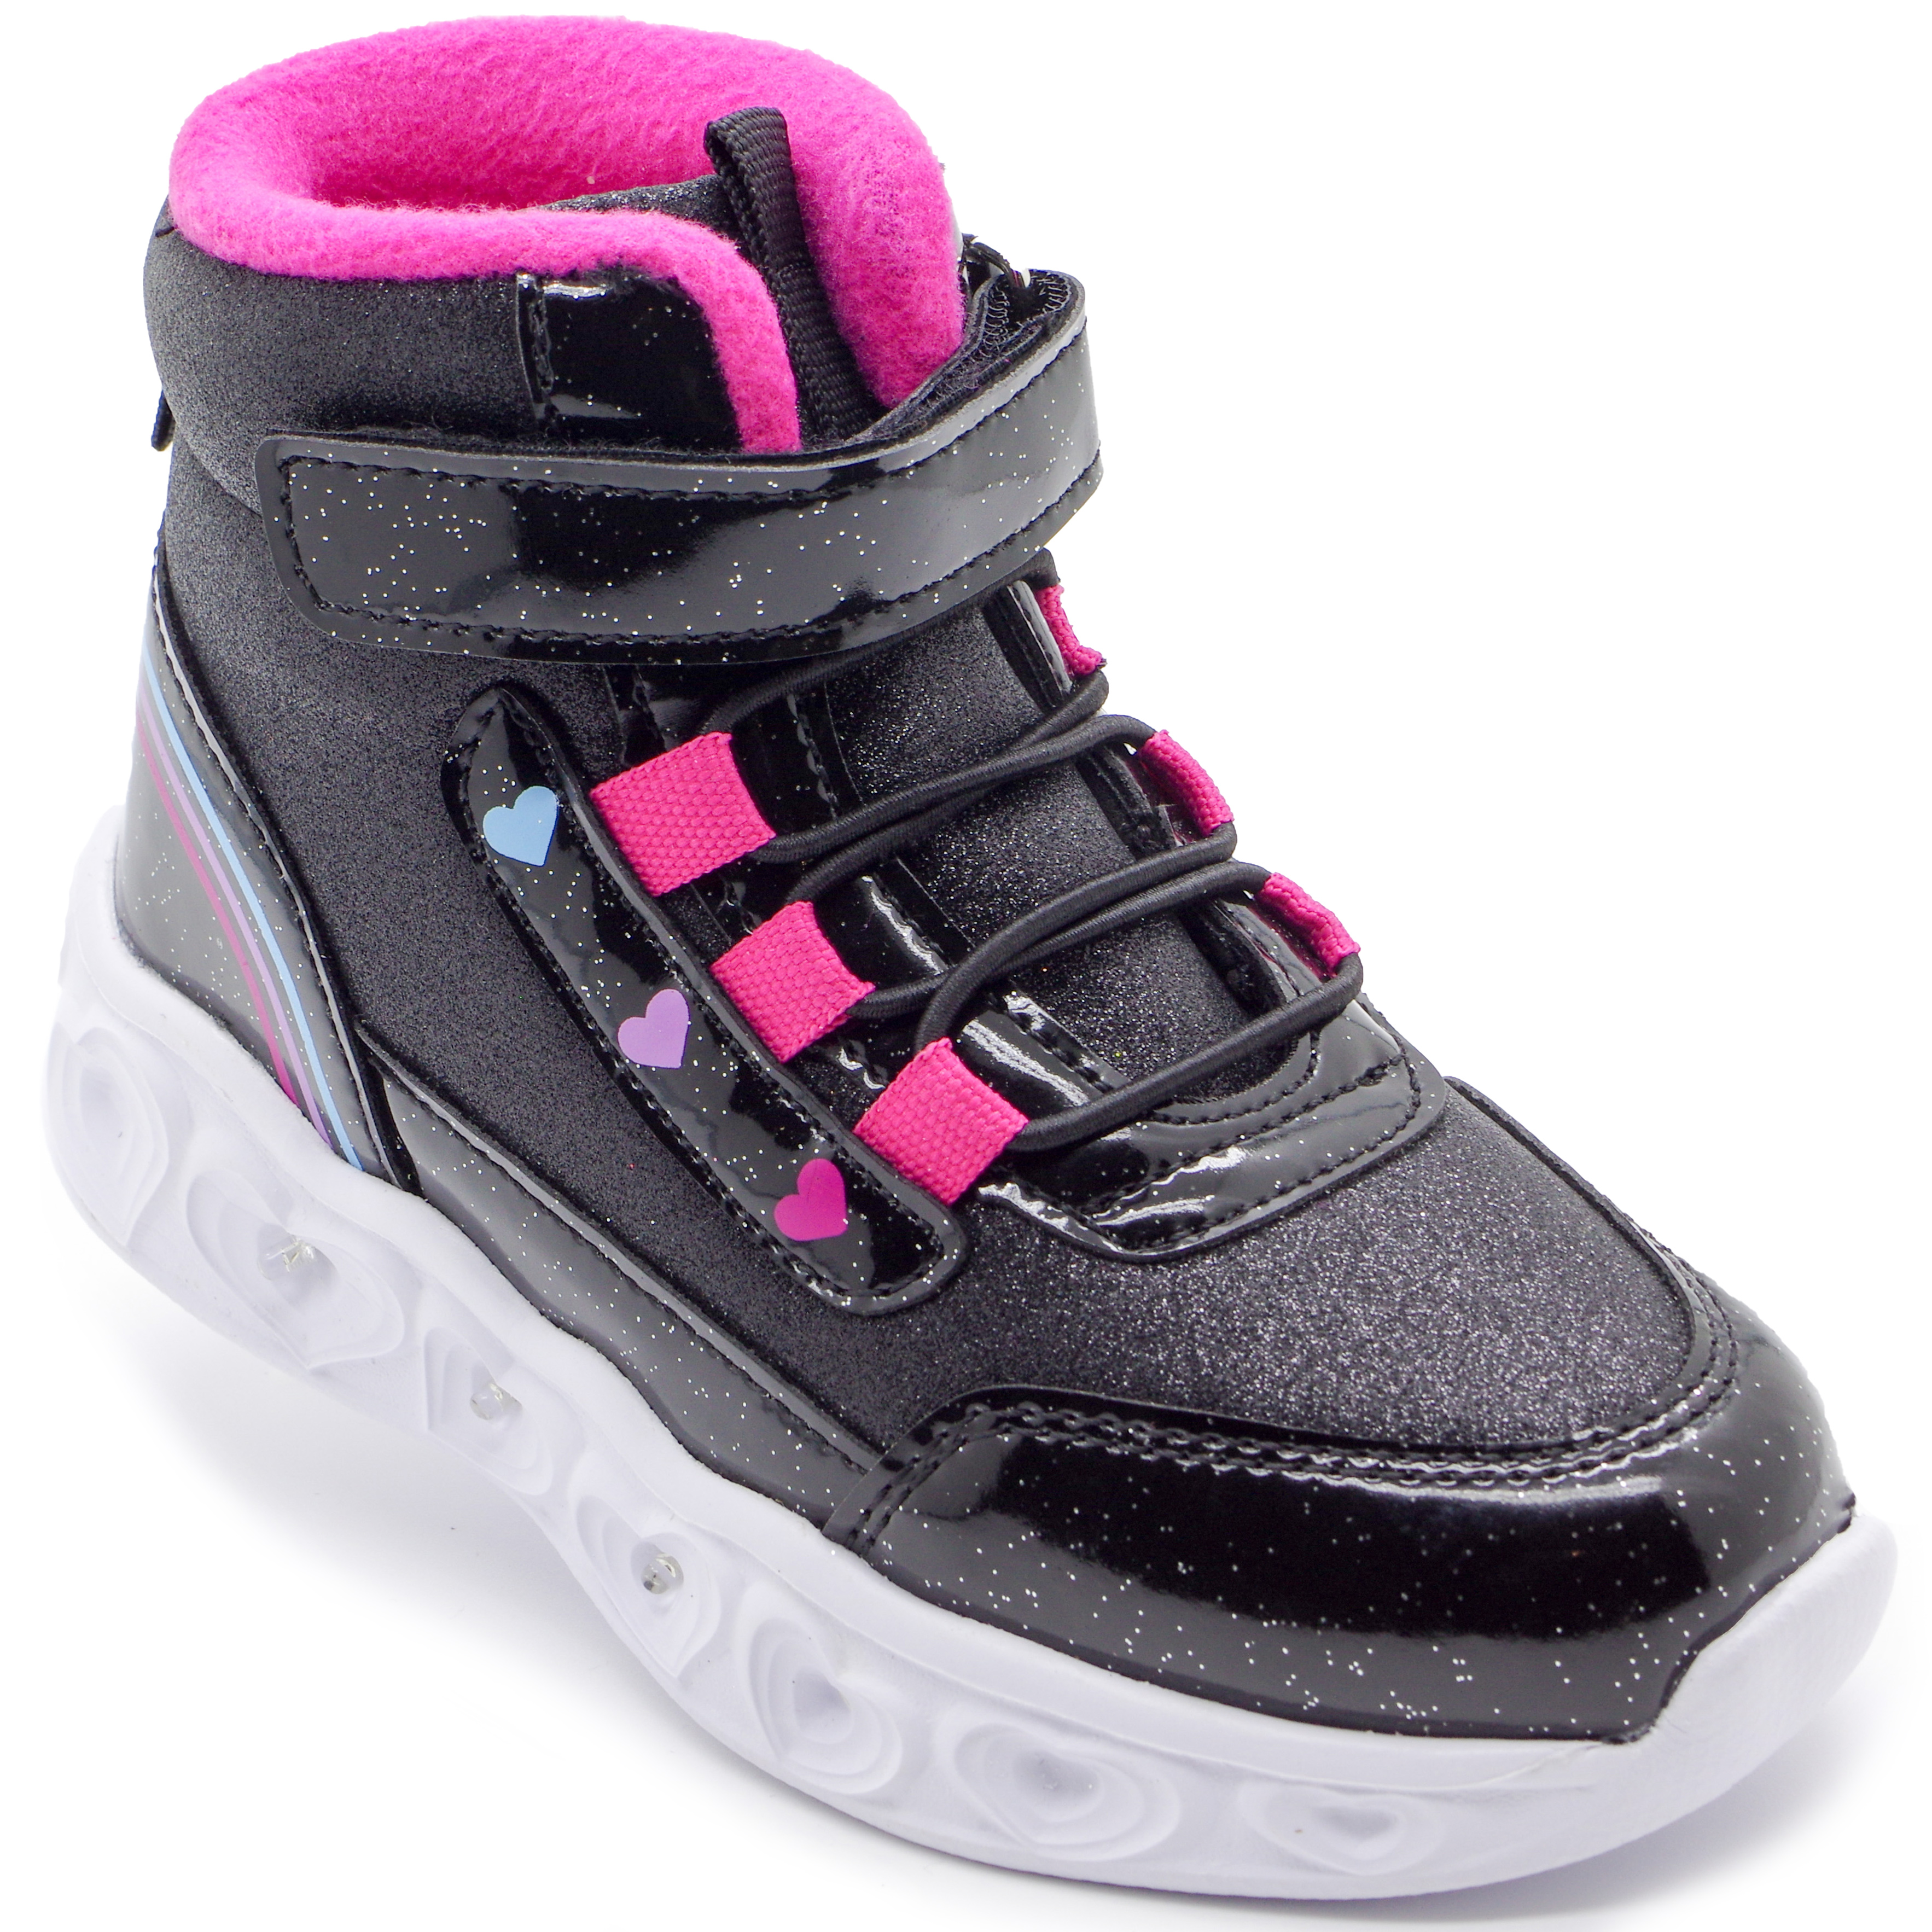 LED ботинки (2215) материал Текстиль, цвет Черный  для девочки 27-31 размеры – Sole Kids